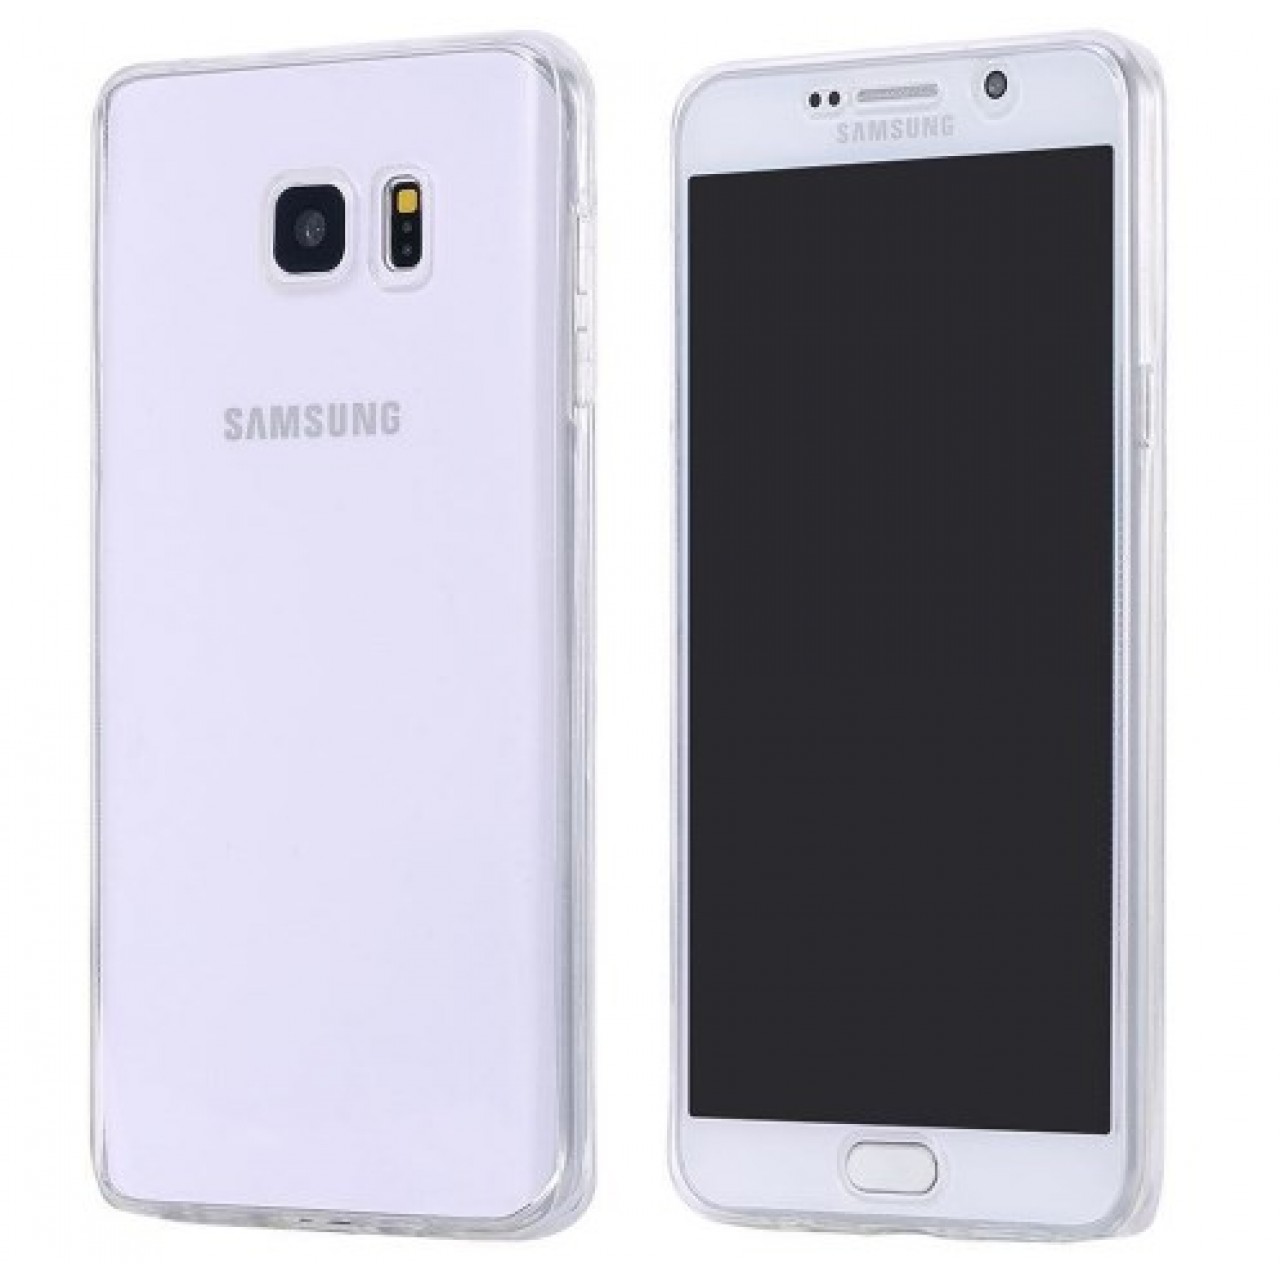 Θήκη Samsung Galaxy J5 2016 ( J510 ) Σιλικόνης TPU full face μπρος πίσω - 2326 - Διάφανο - OEM